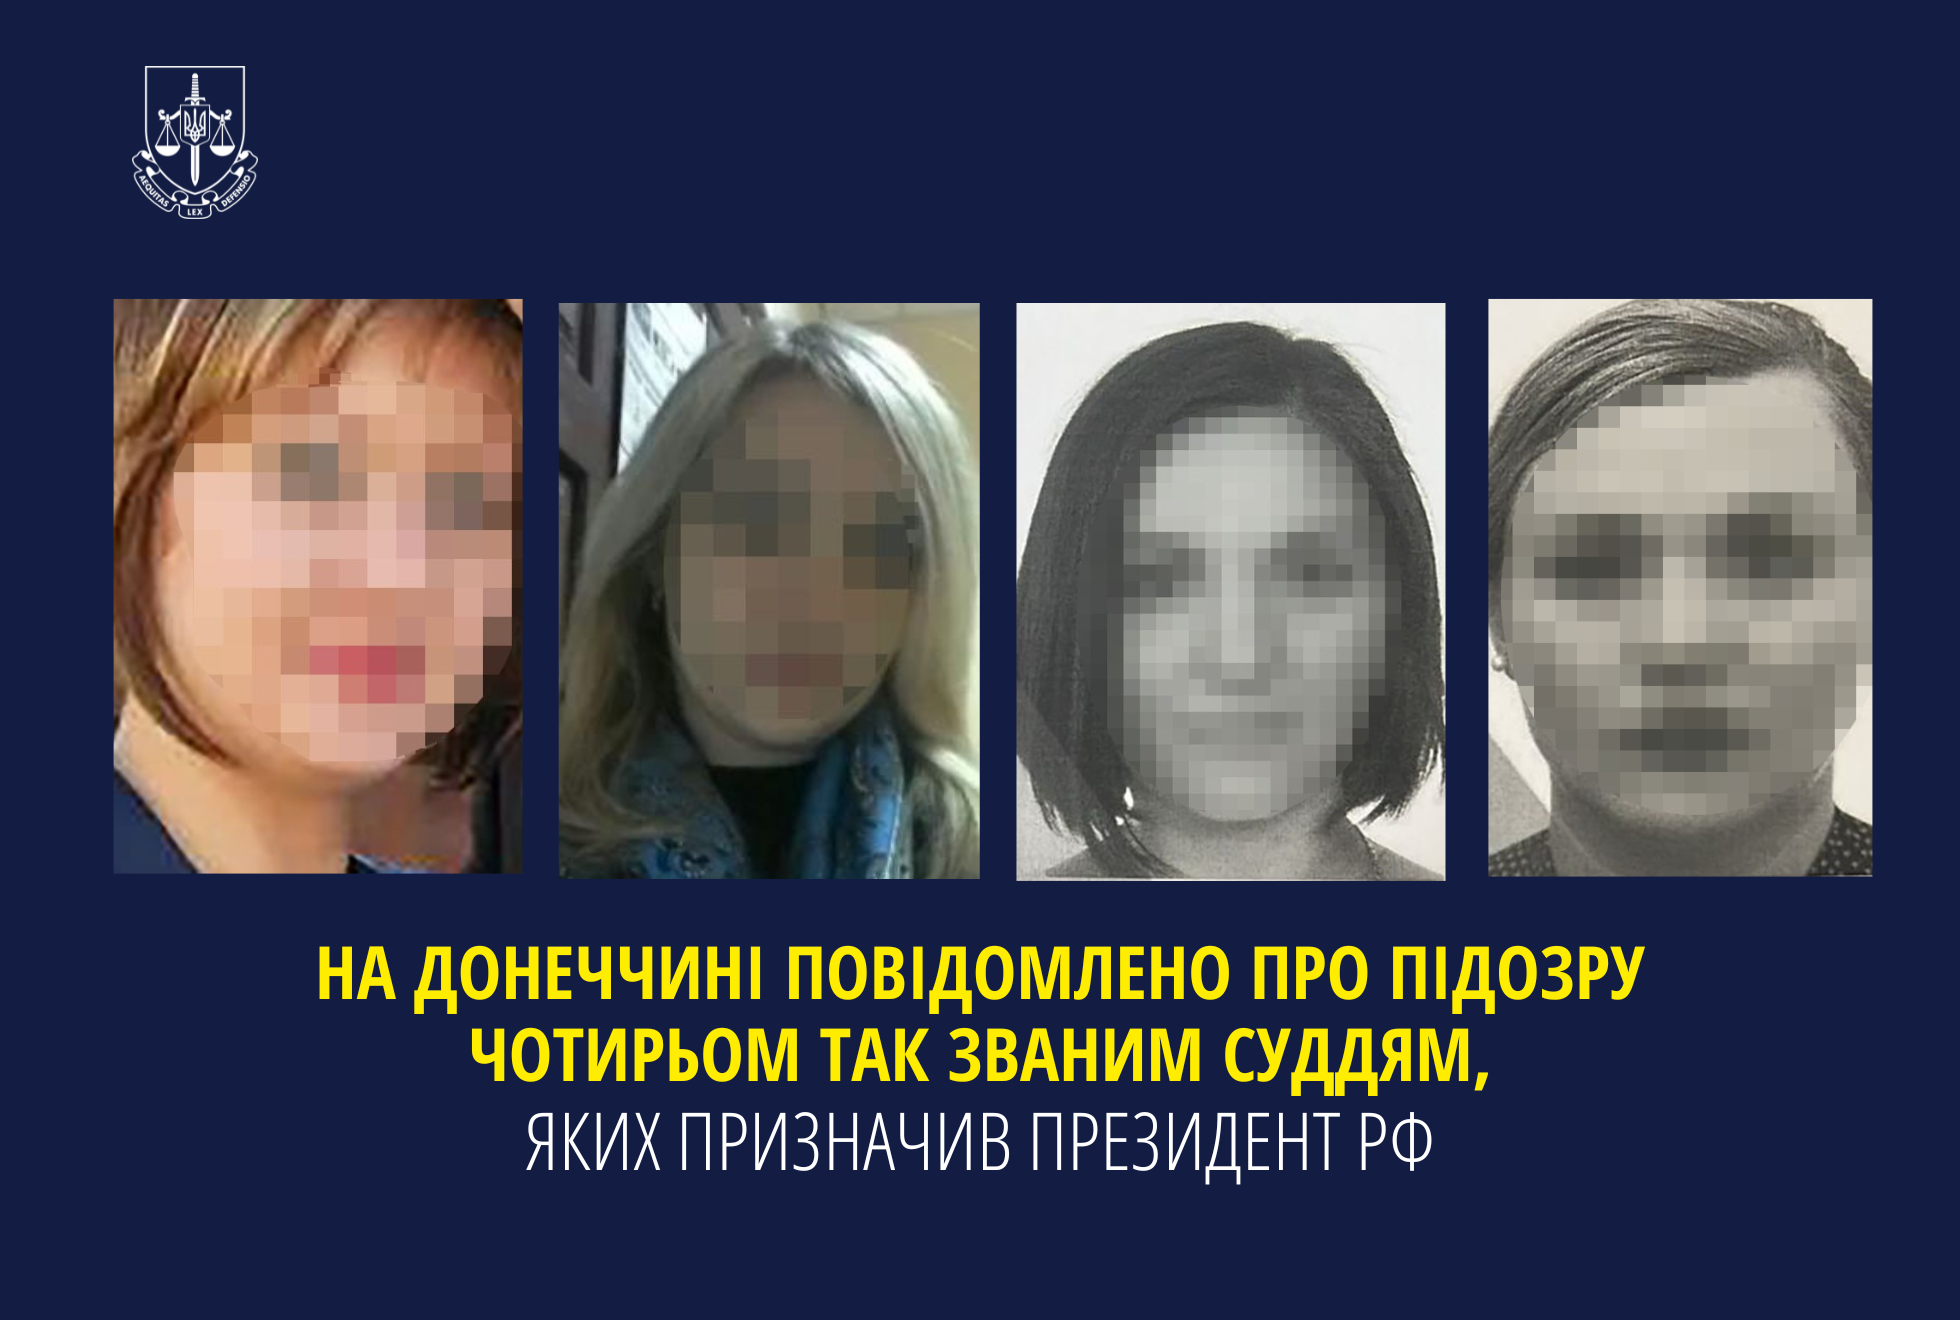 На Донеччині повідомлено про підозру чотирьом так званим суддям, яких призначив президент рф